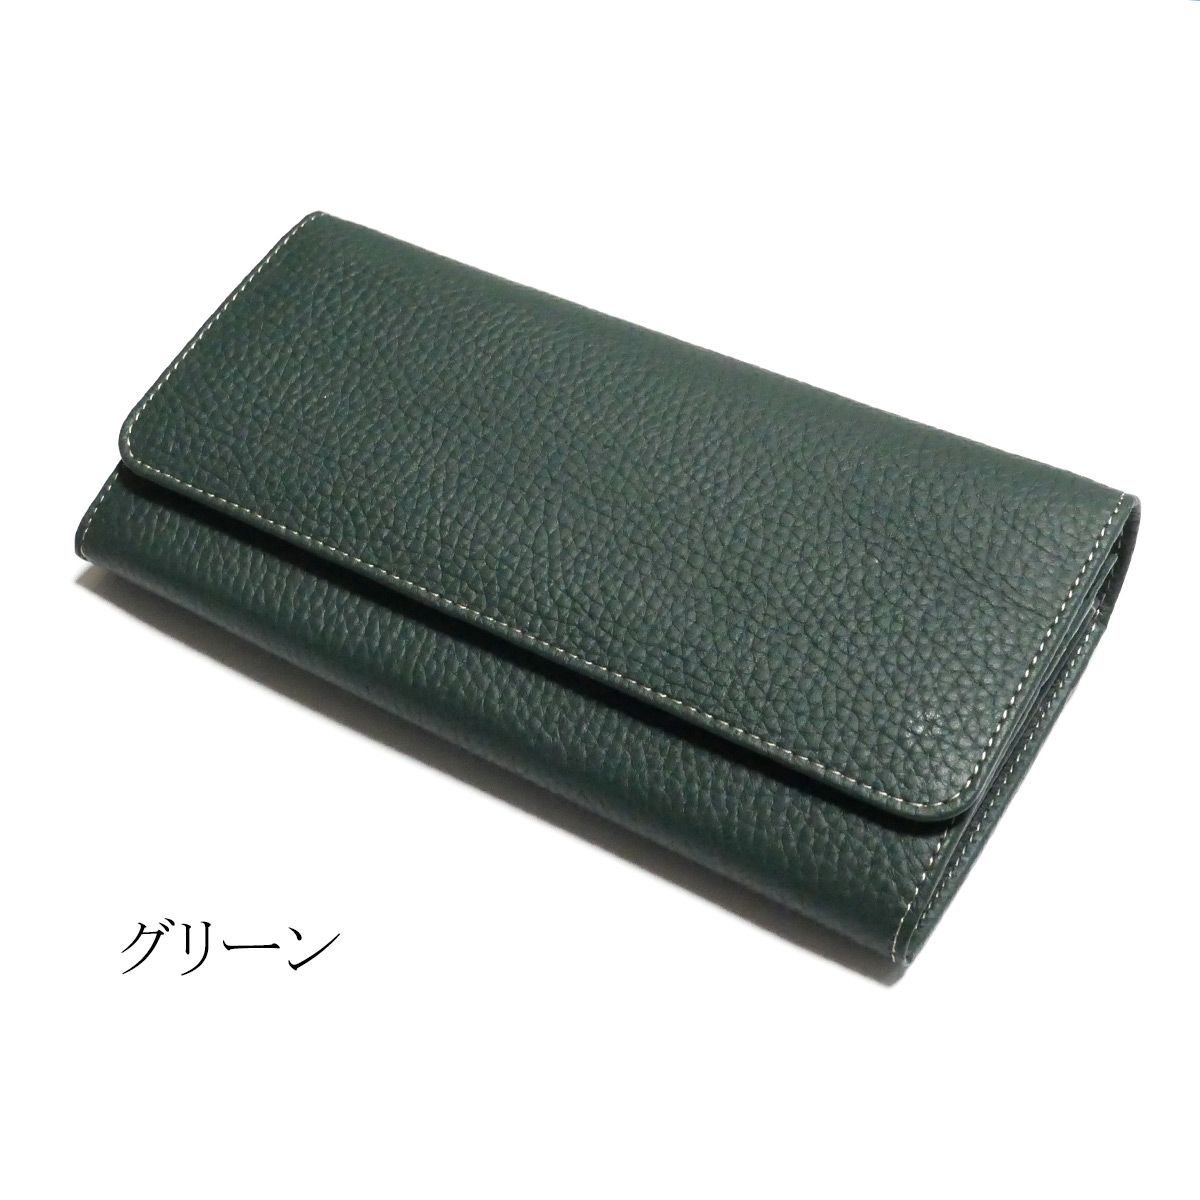 がま口 長財布 かぶせ型 / 本革 牛革 ブラウニー / 全３色 ブルー・グリーン・ブラック